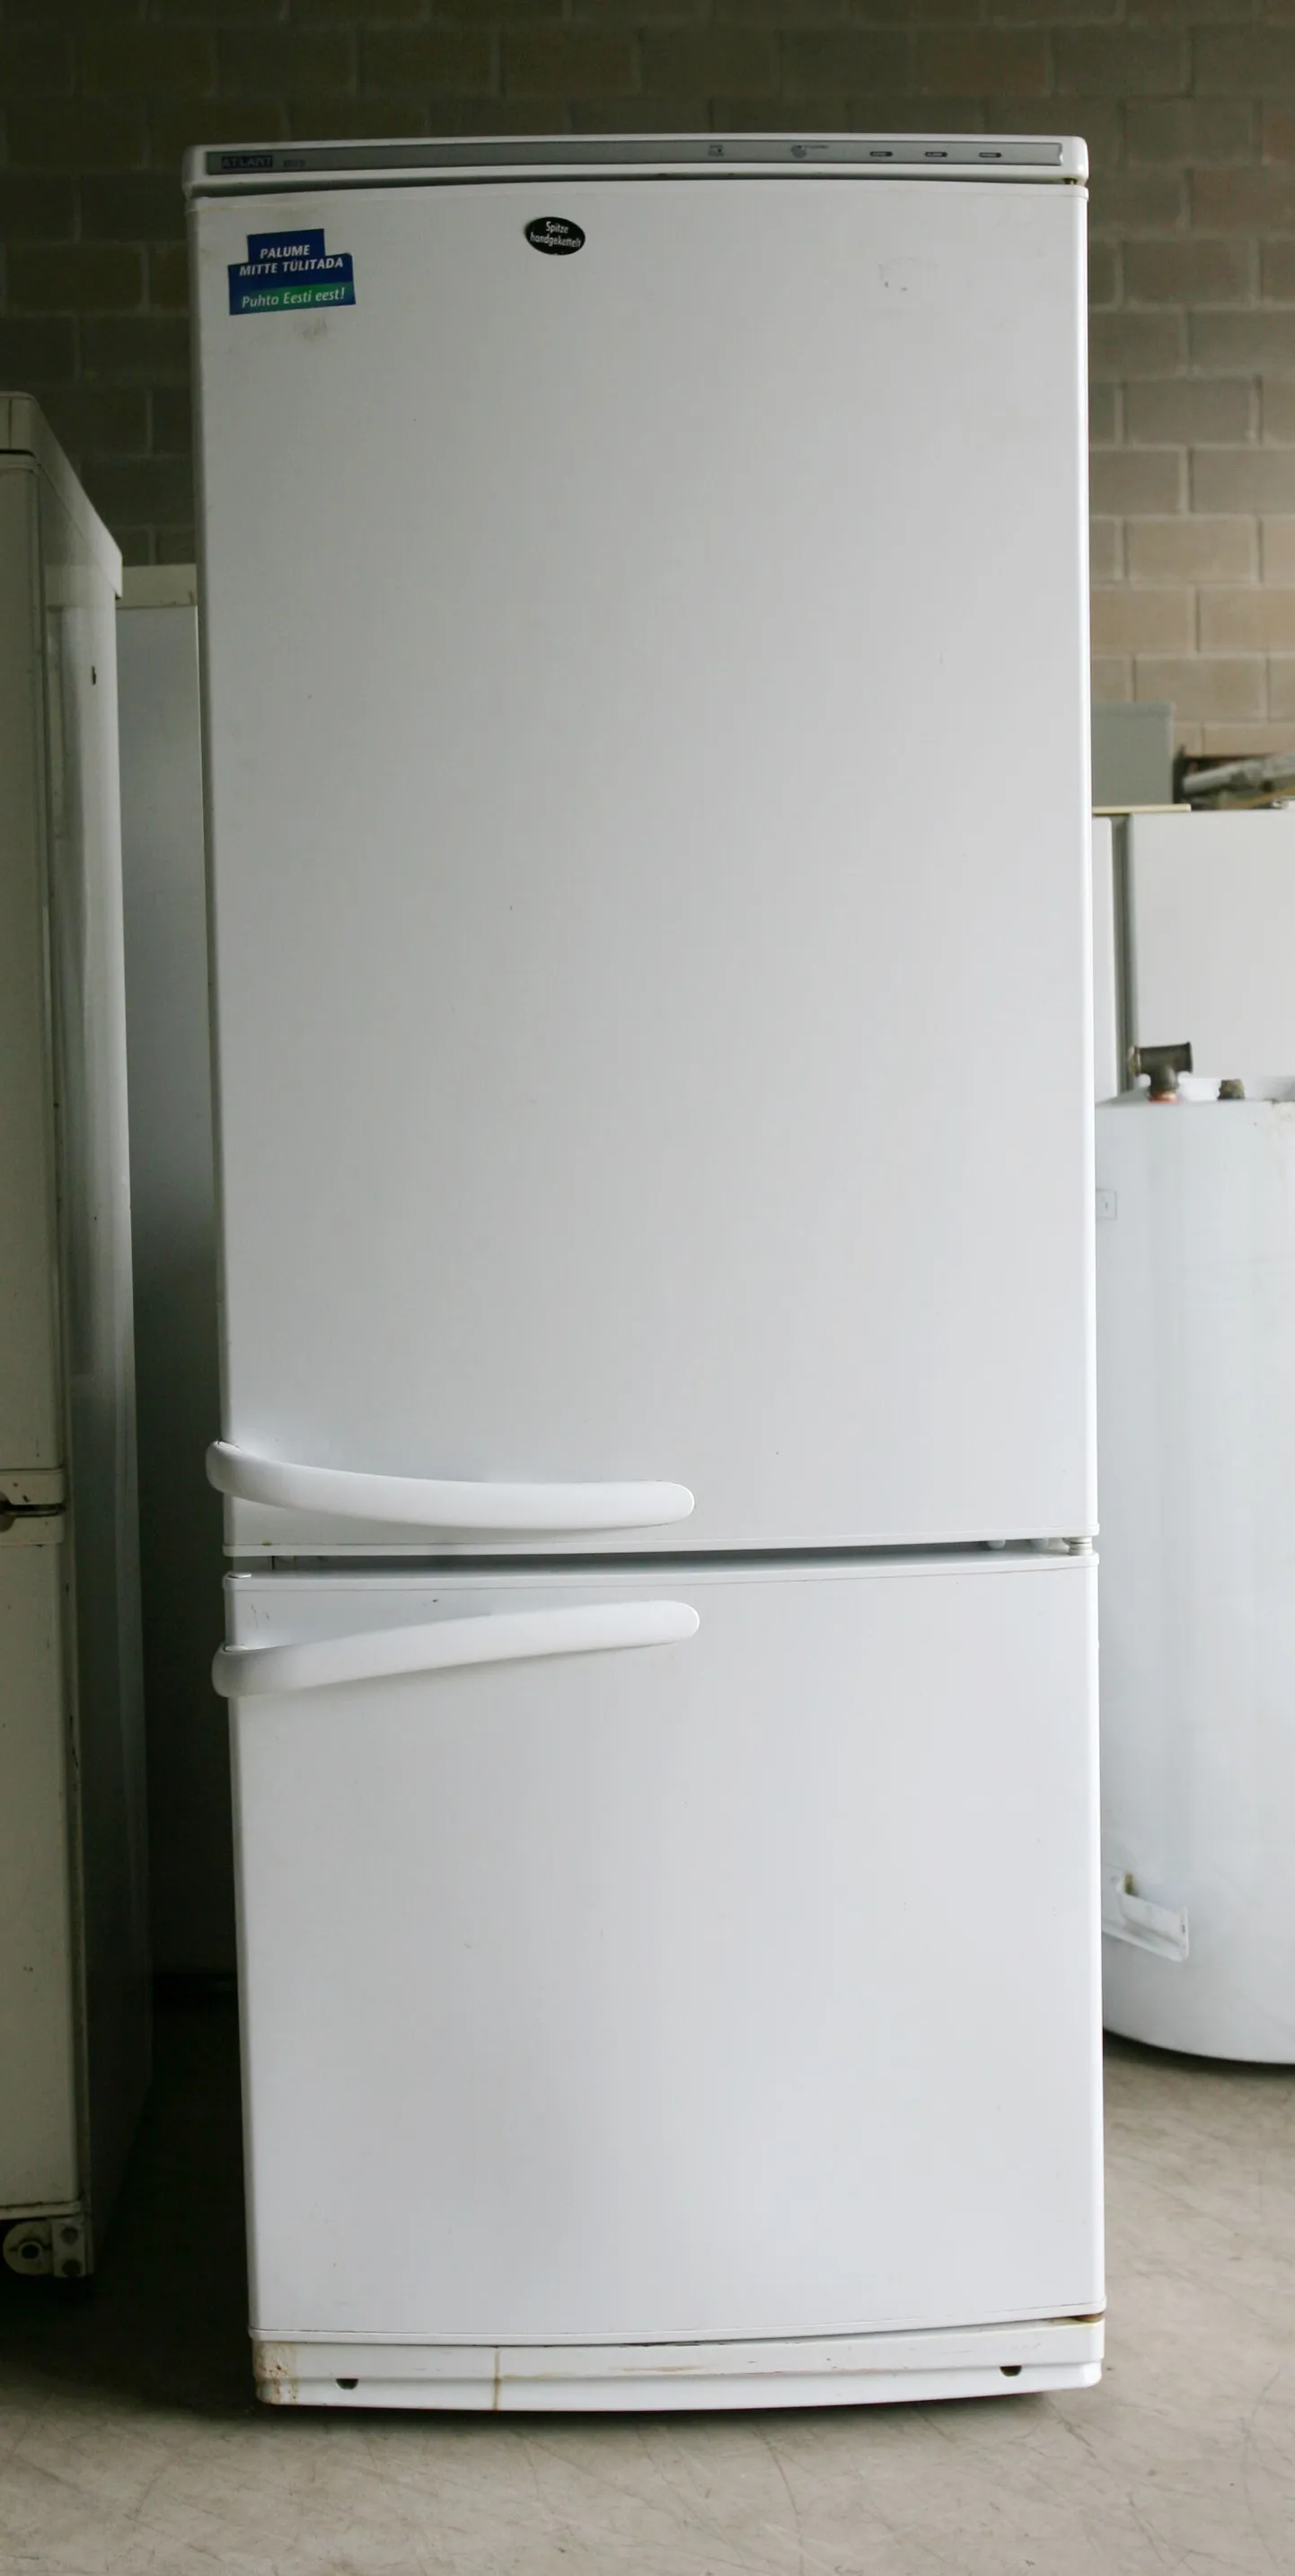 Холодильник. Иллюстративное фото.